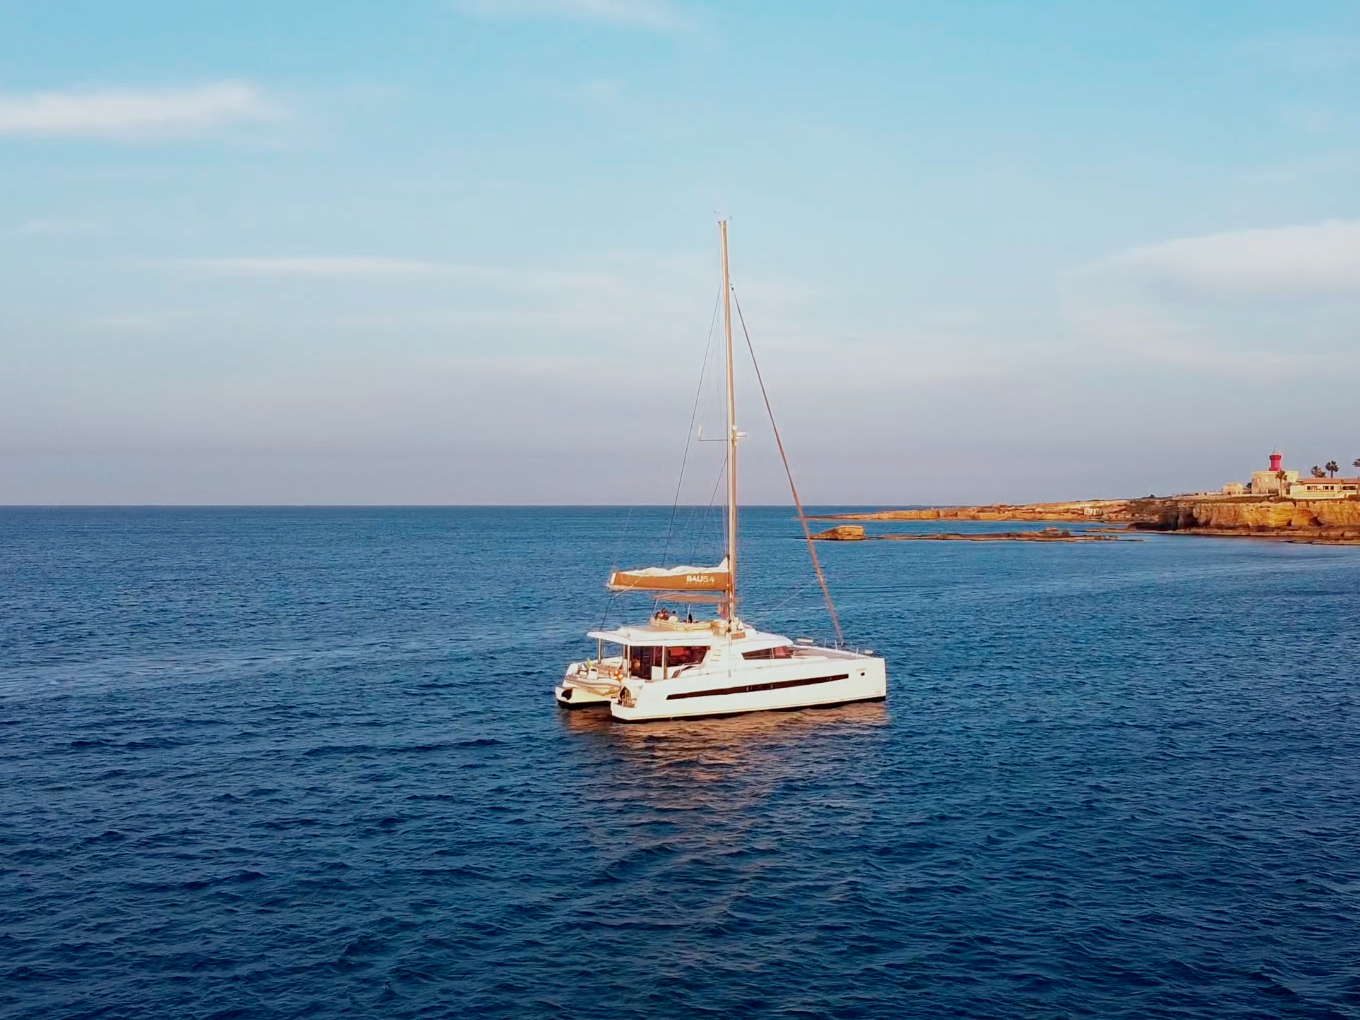 Bali 5.4 - Luxury yacht charter Italy & Boat hire in Italy Sicily Aeolian Islands Capo d'Orlando Capo d'Orlando Marina 2